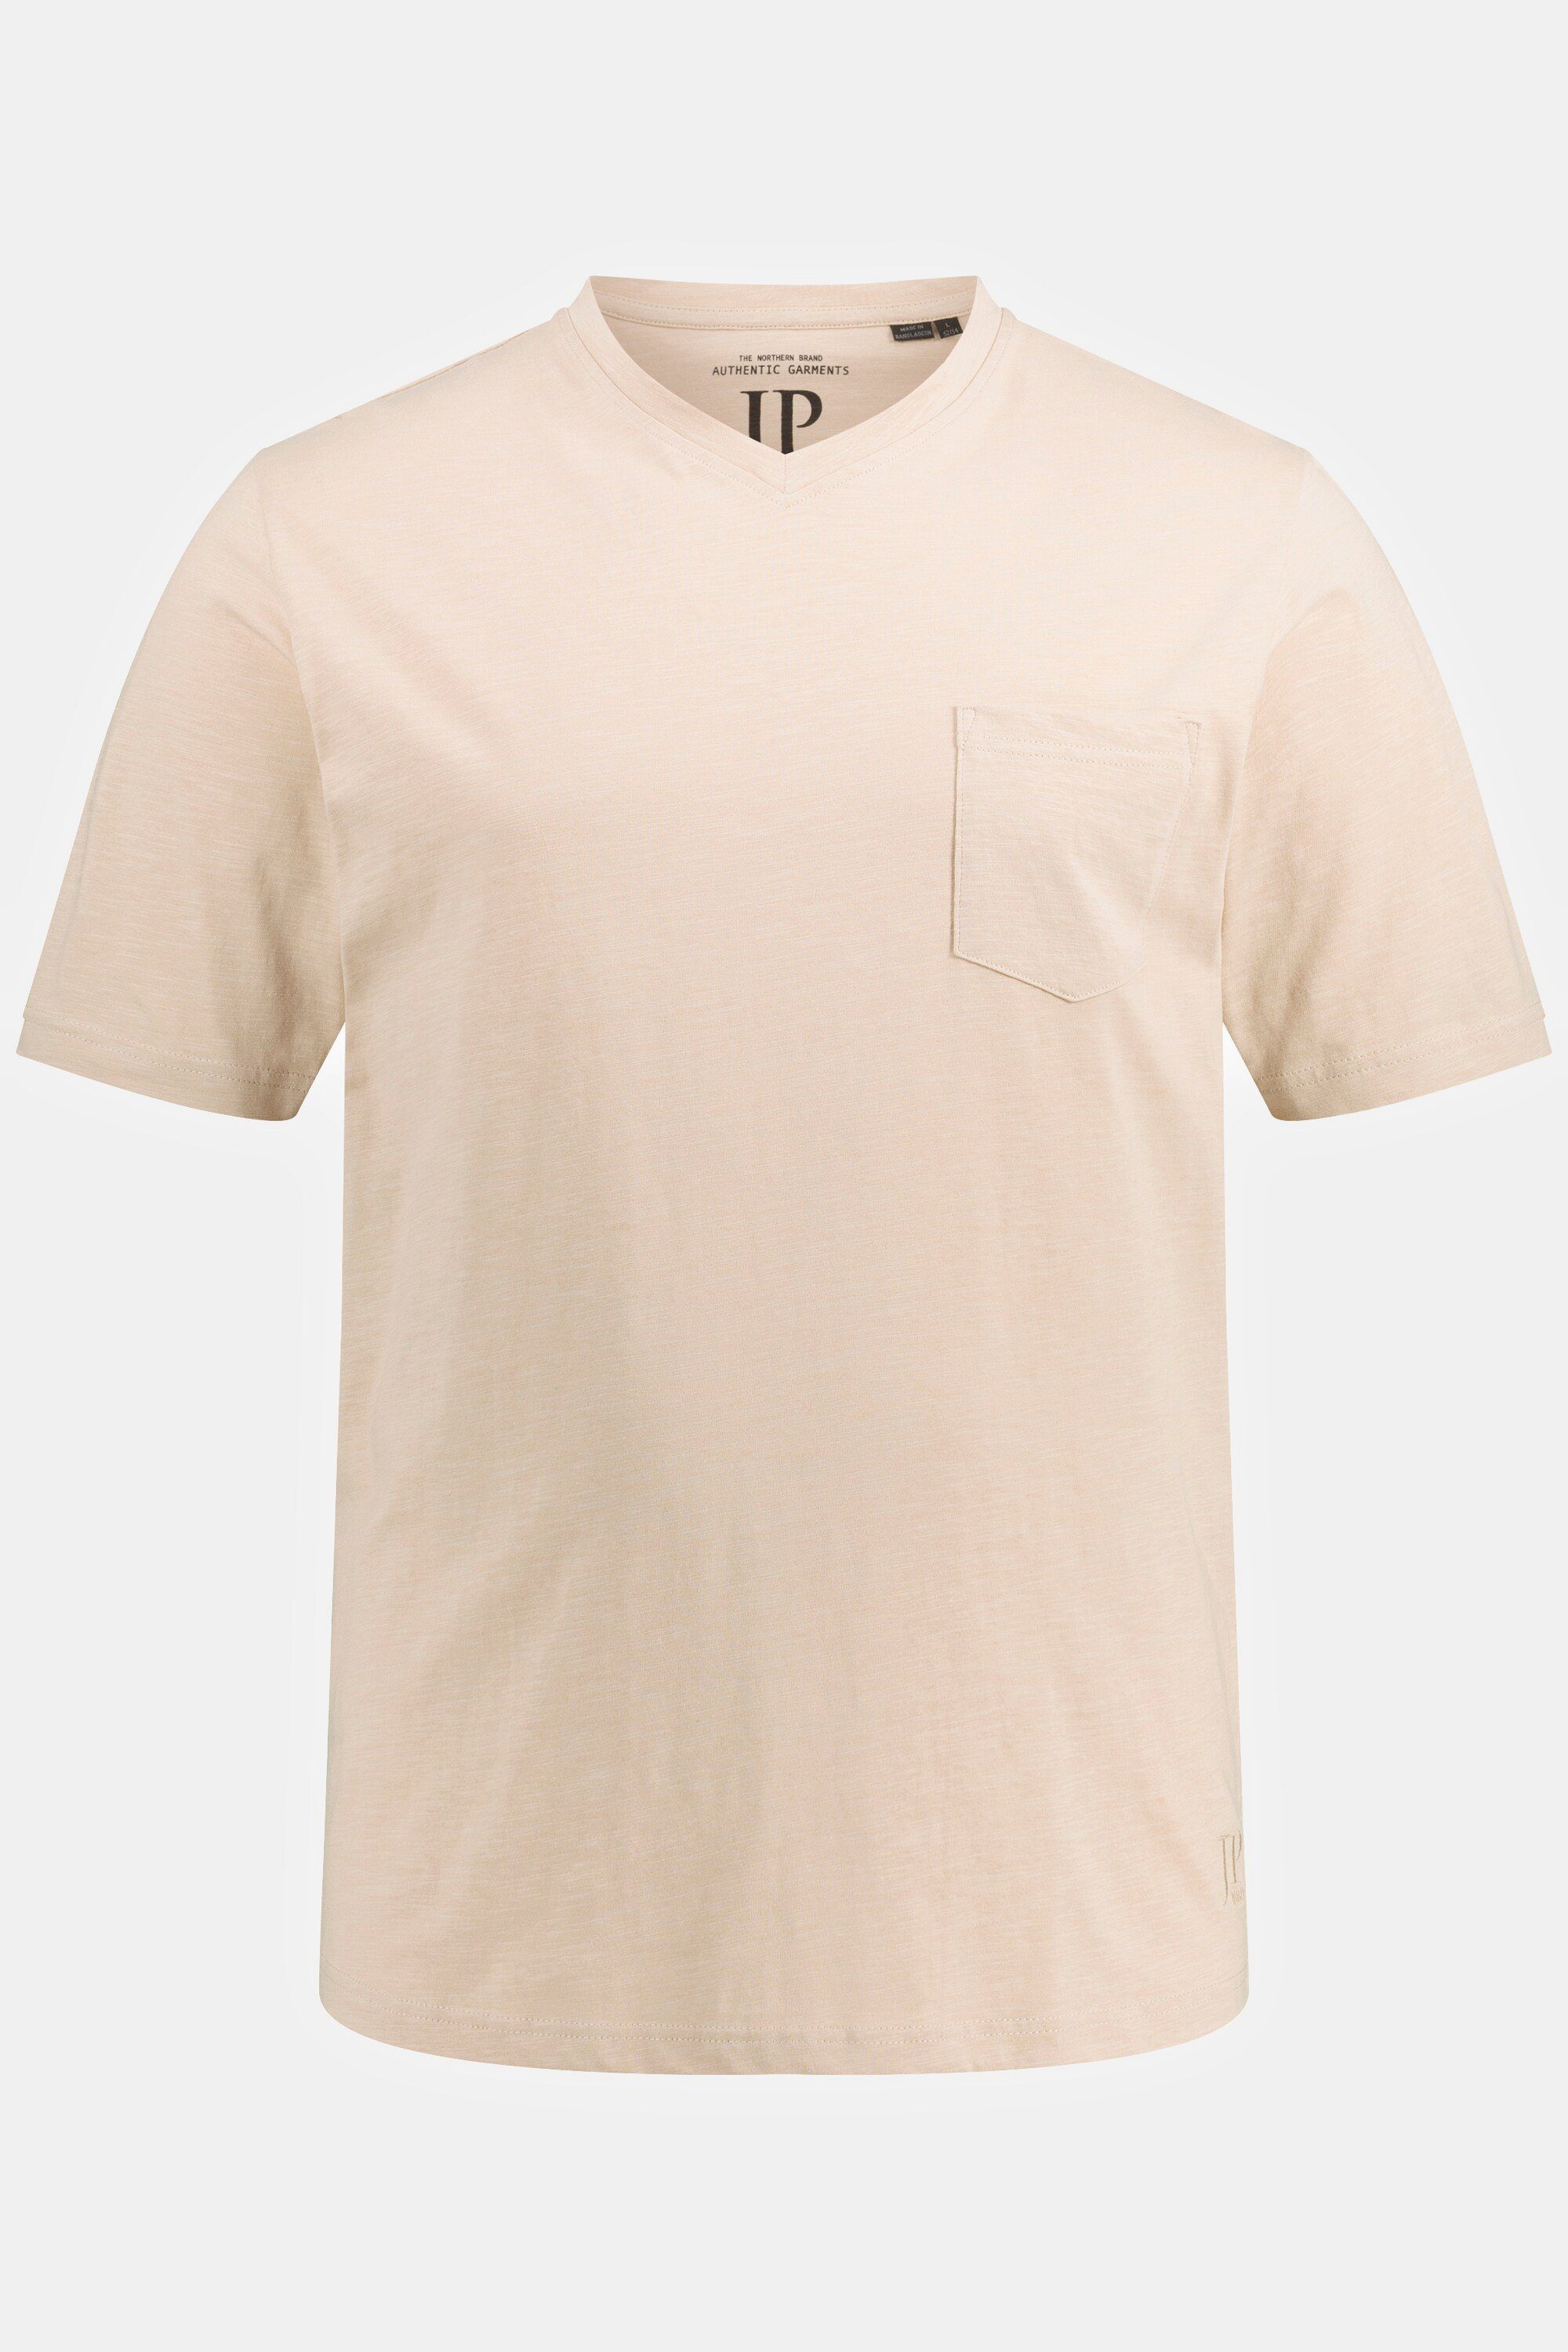 JP1880 T-Shirt T-Shirt Basic Flammjersey beige Halbarm V-Ausschnitt